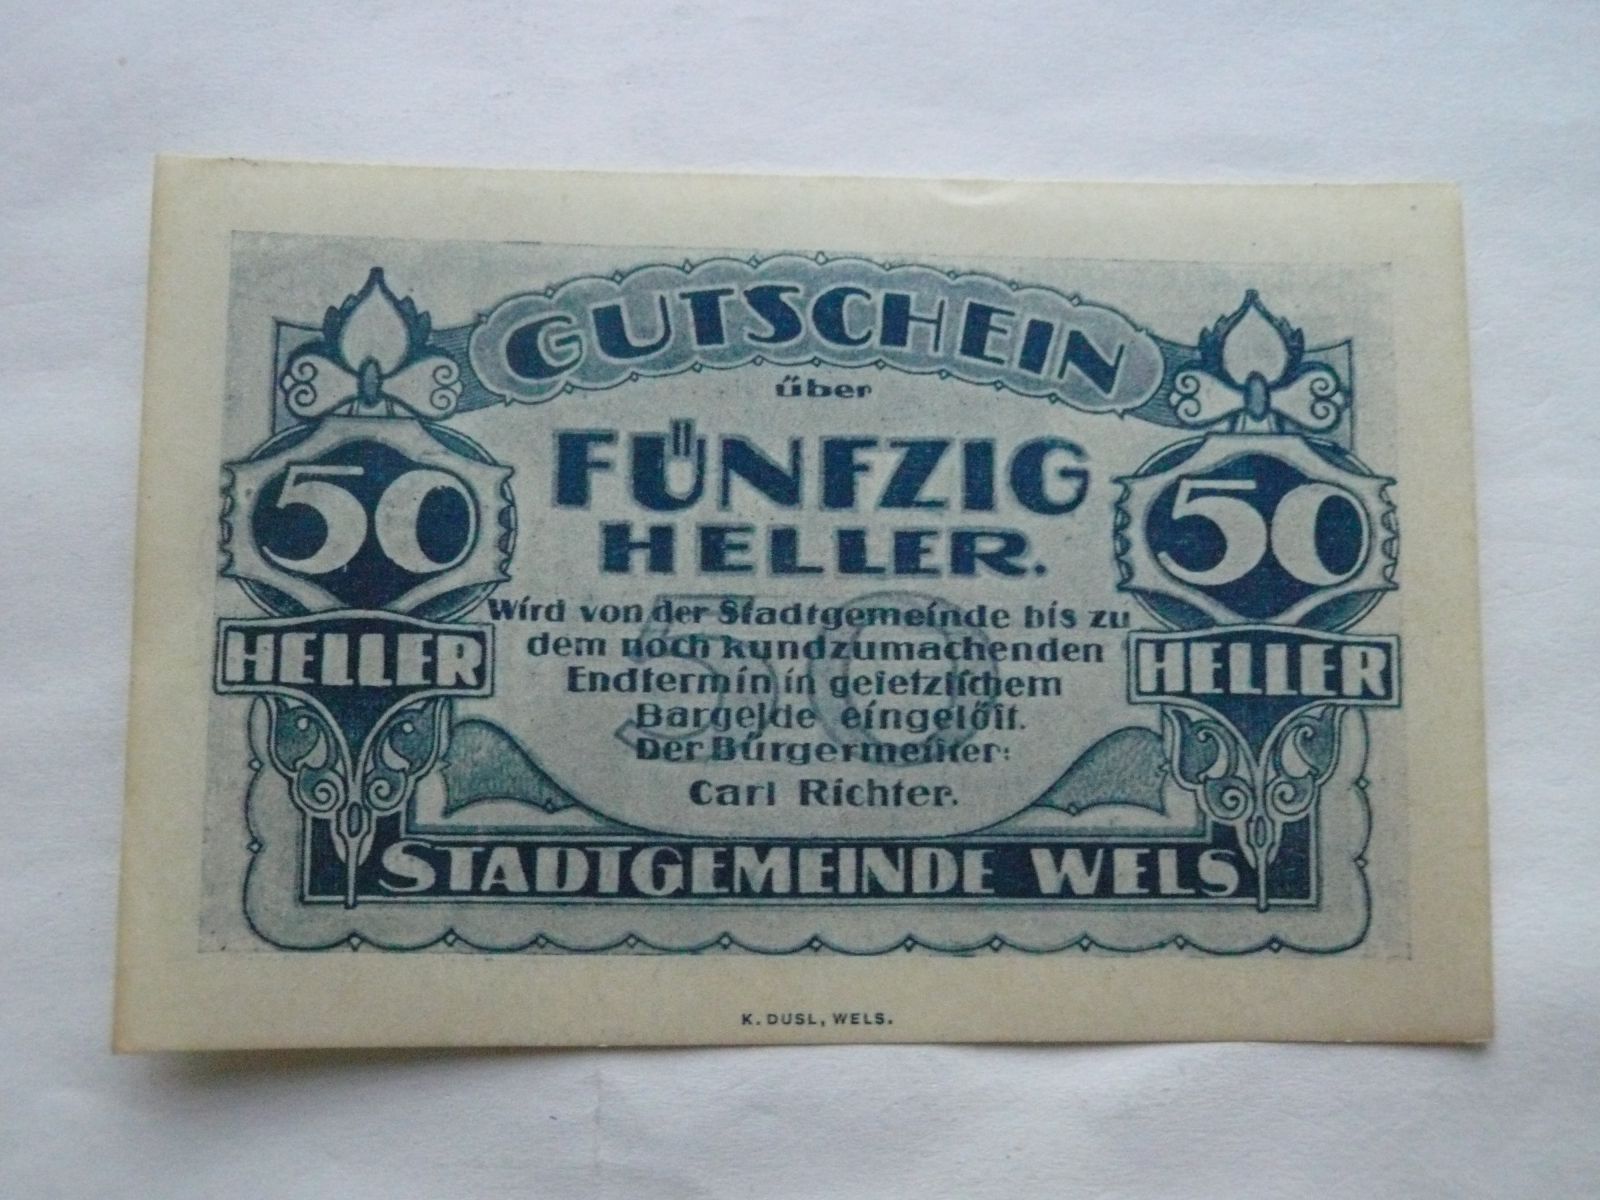 50 Heller, Gutschein, Rakousko